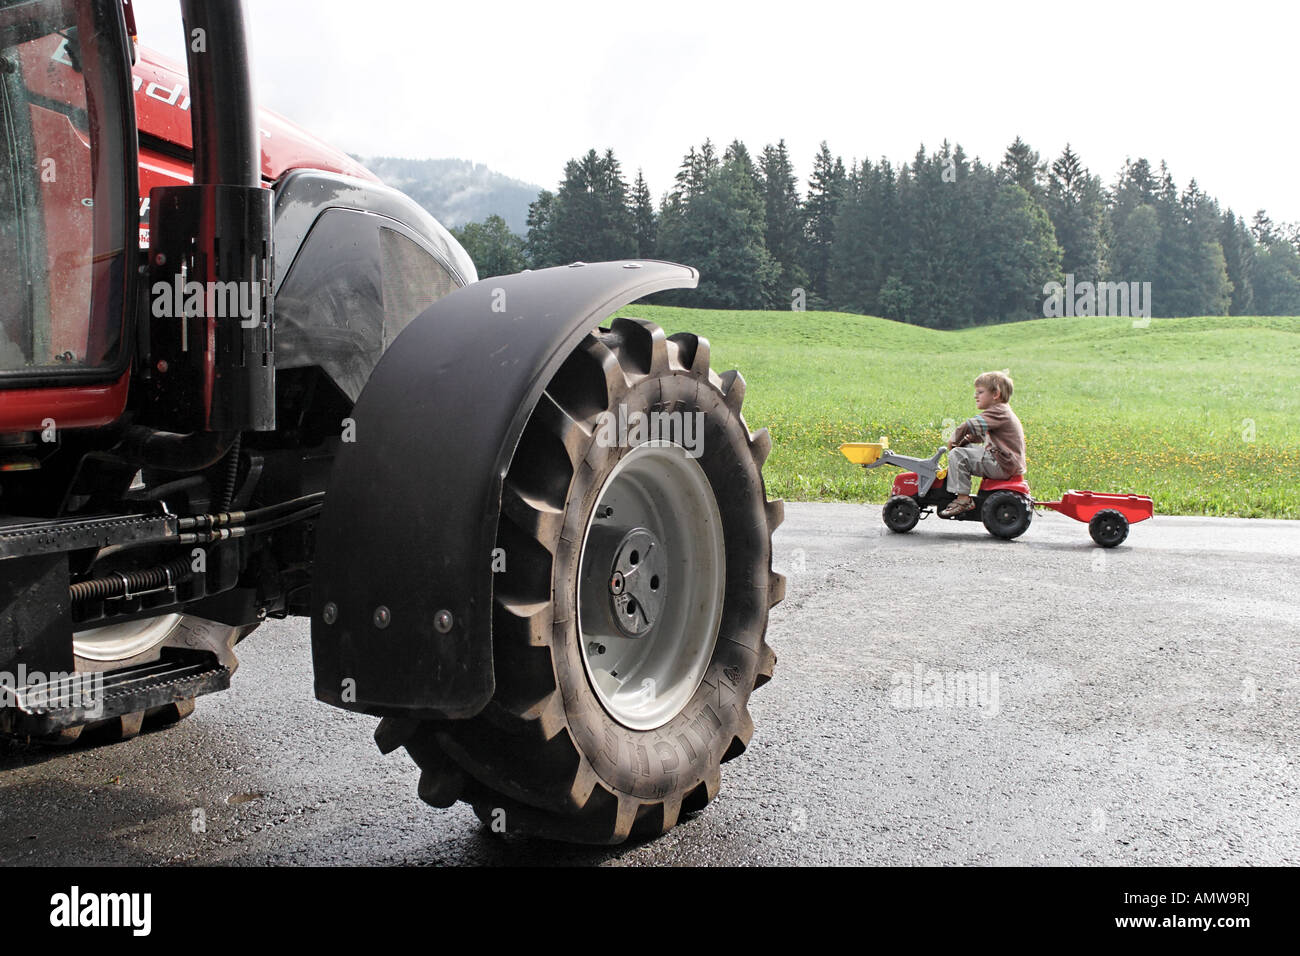 Et grand tracteur tracteur - jouet enfant le jeune enfant jouet de pédalage d'un grand passé tracteur tracteur agricole. Banque D'Images